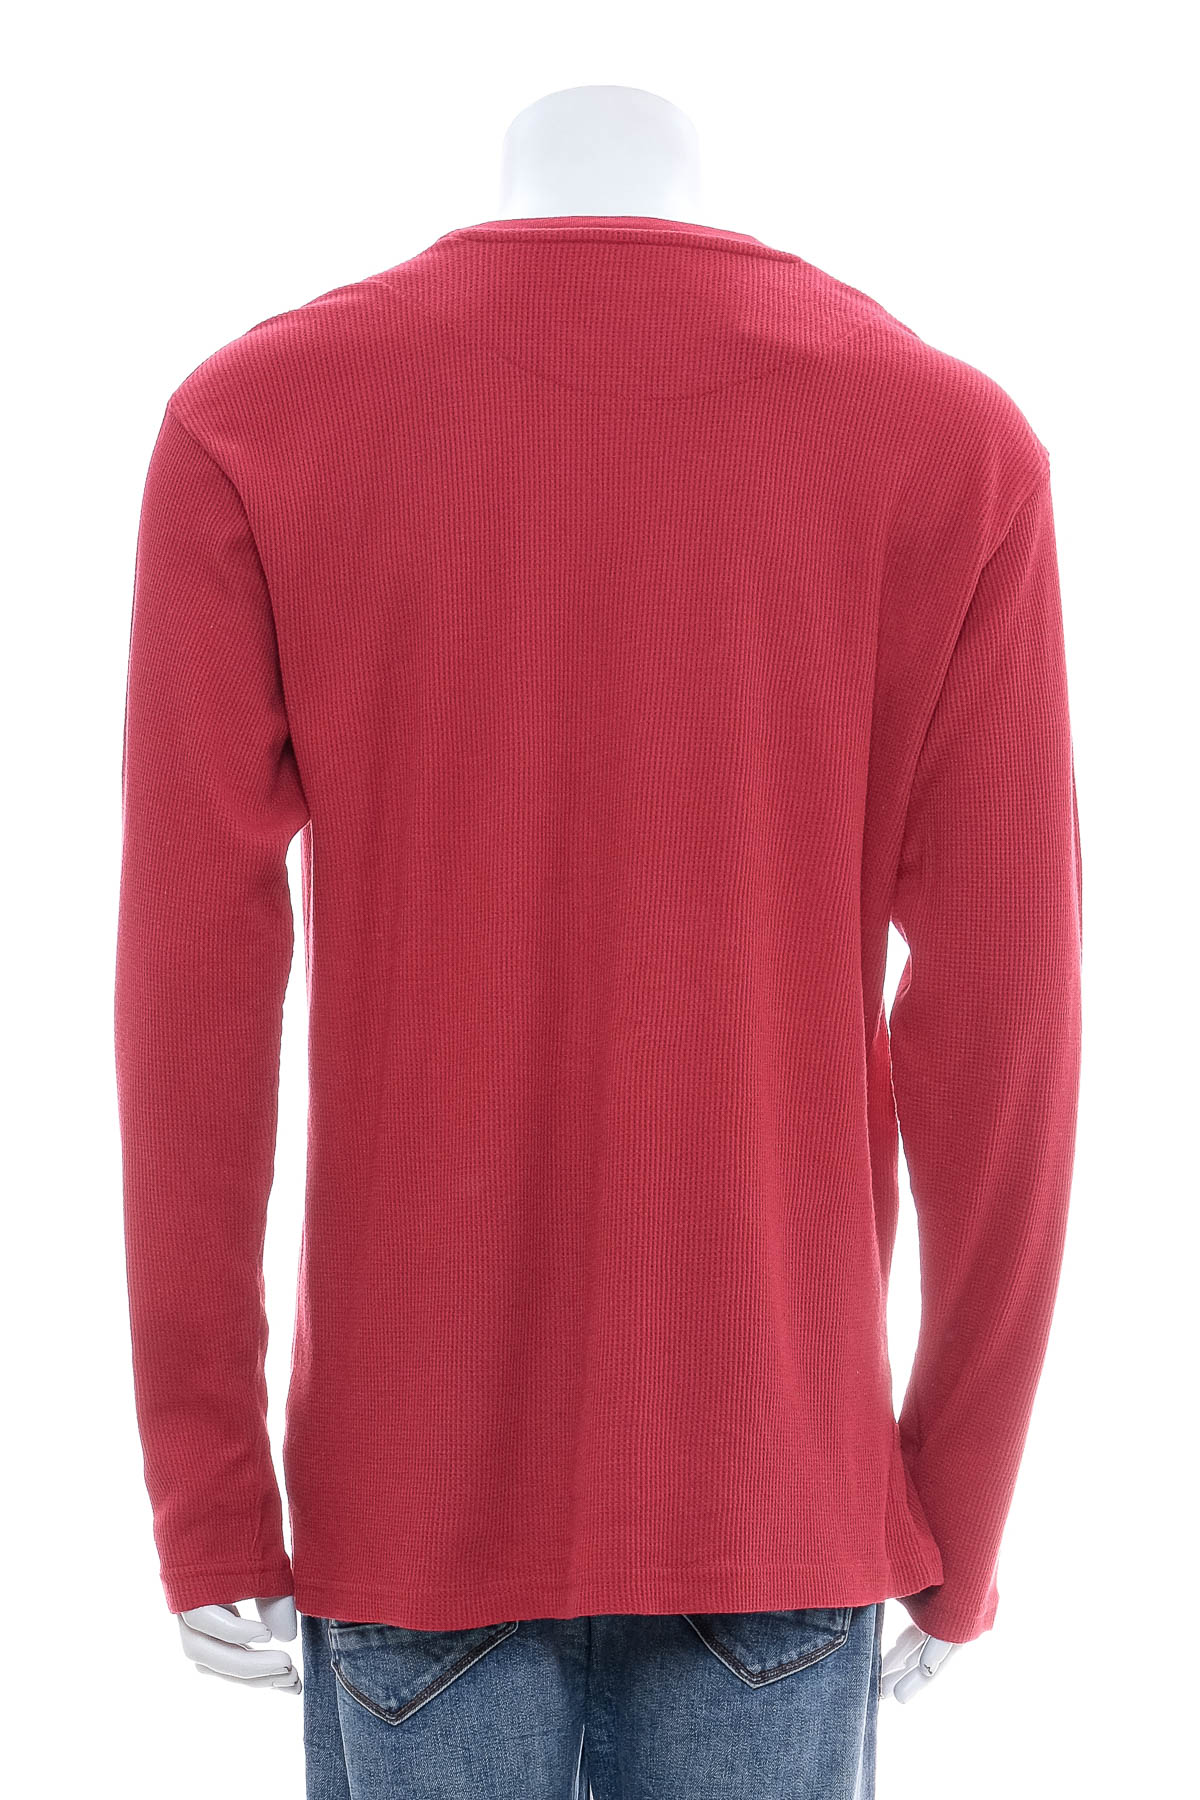 Men's sweater - SADDLEBRED - 1